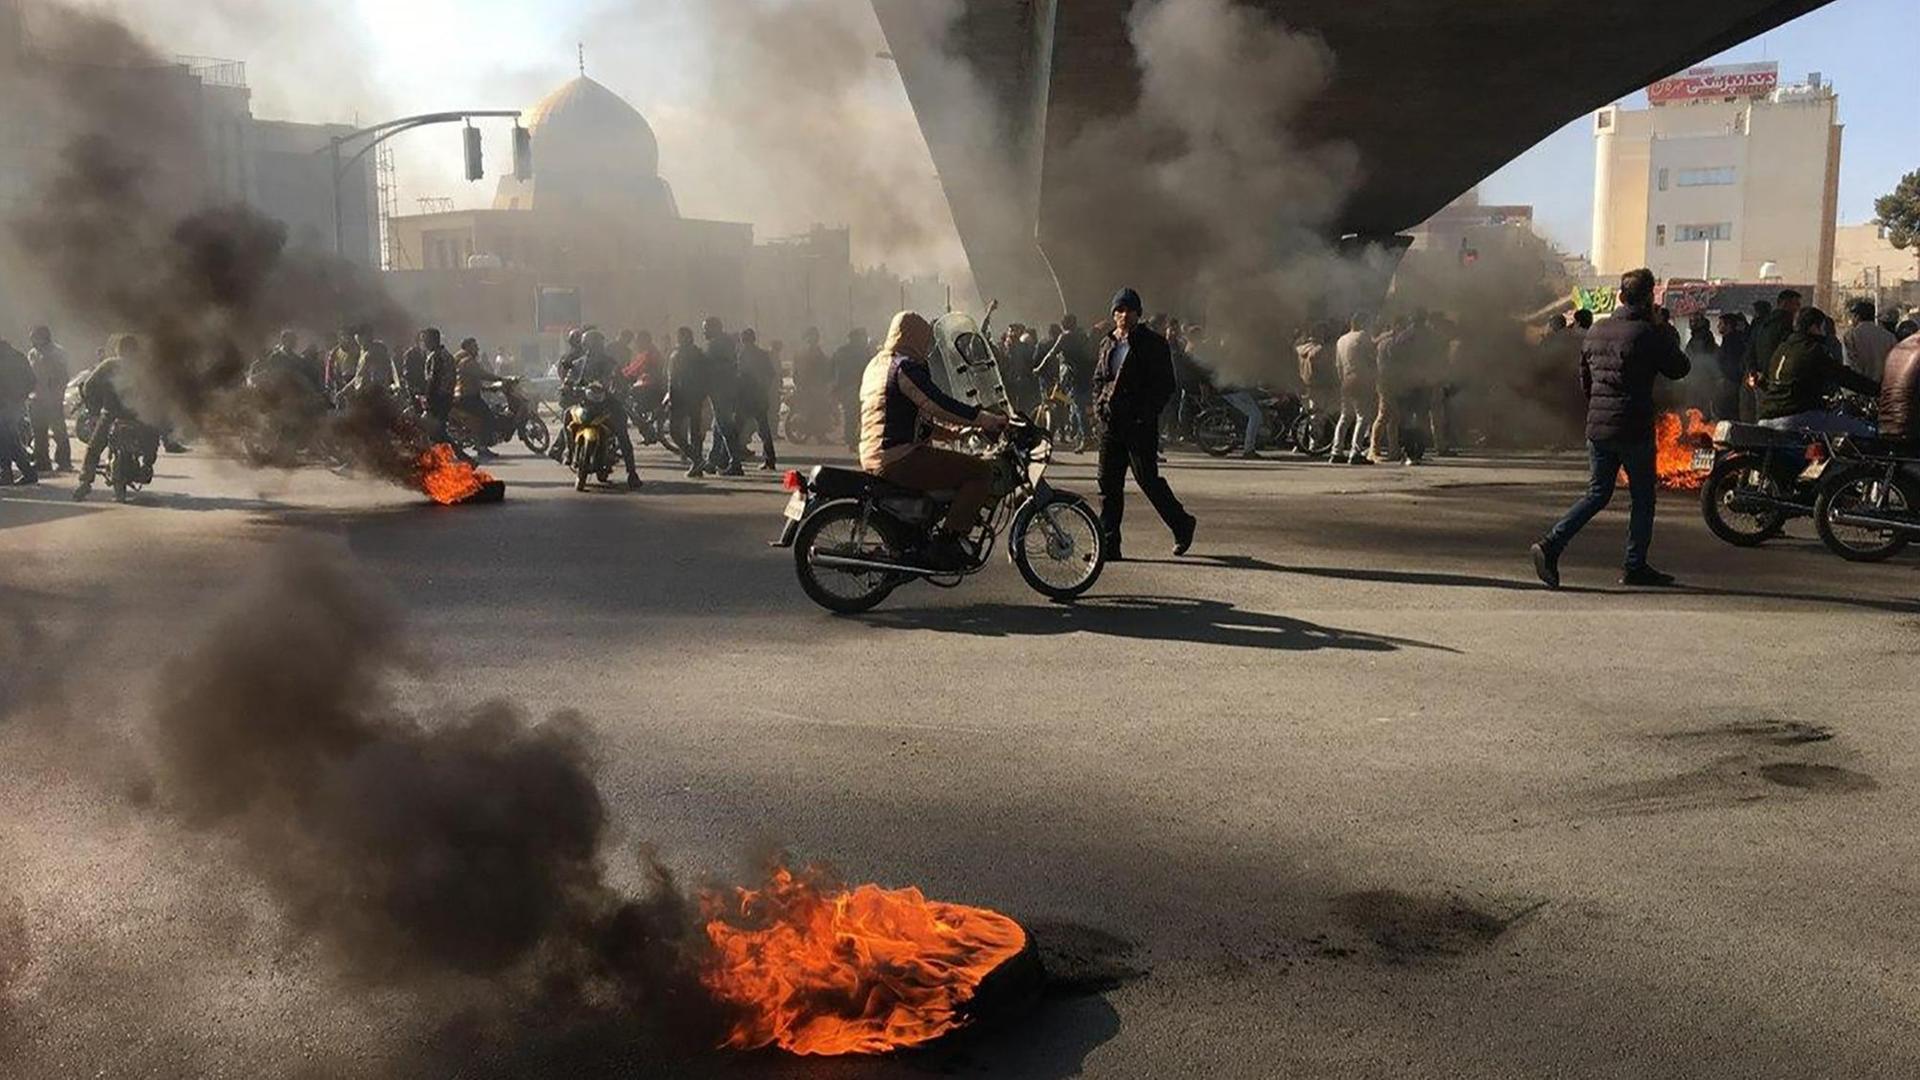 Protest mit brennenden Reifen in der iranischen Stadt Isfahan.